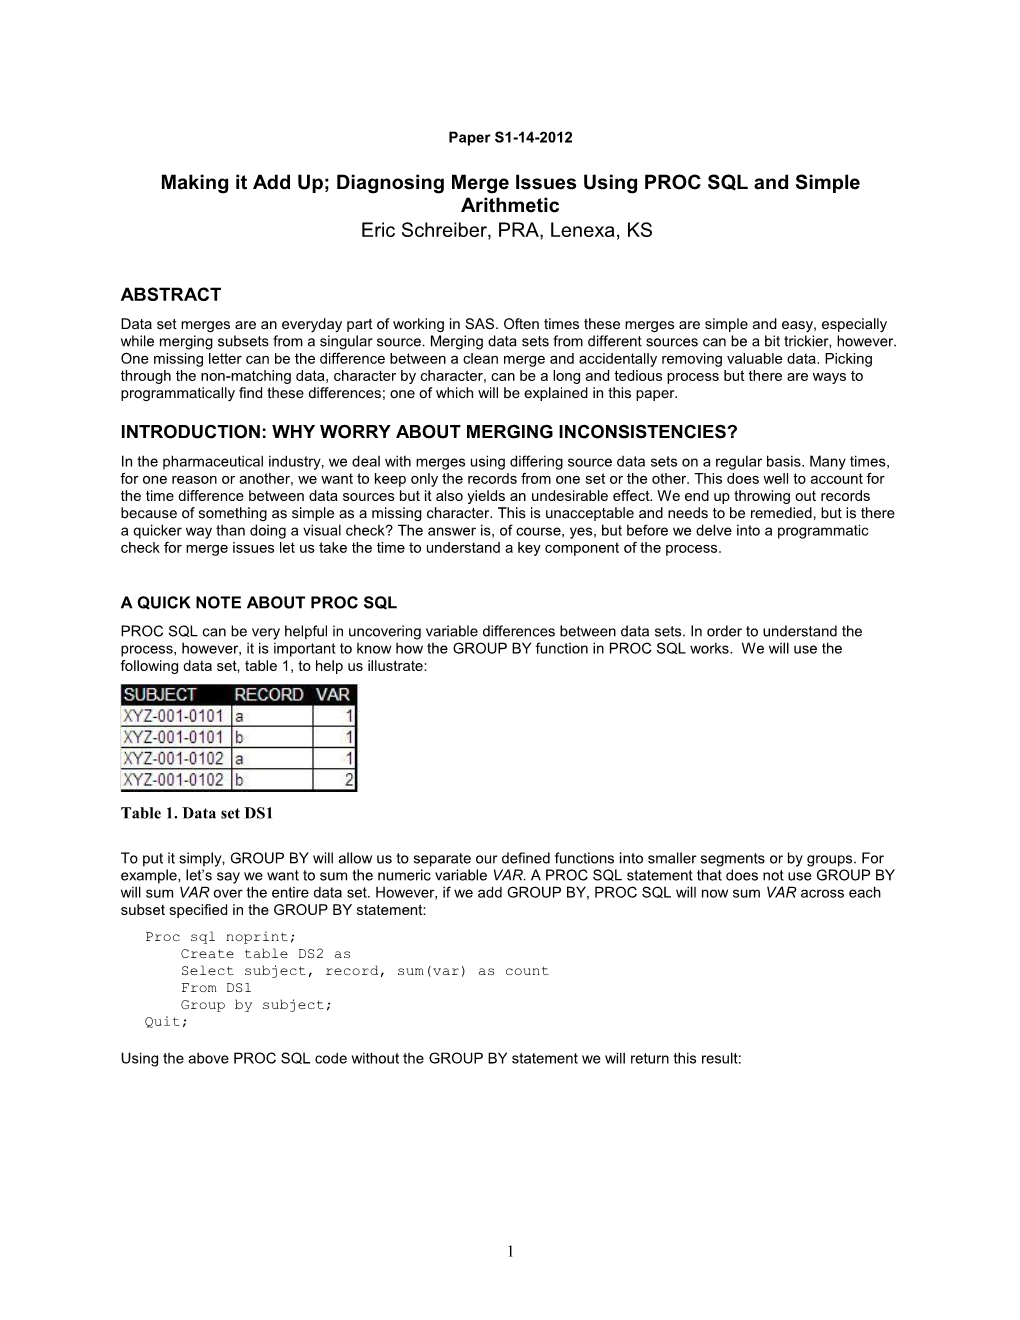 Diagnosing Merge Issues Using PROC SQL and Simple Arithmetic Eric Schreiber, PRA, Lenexa, KS